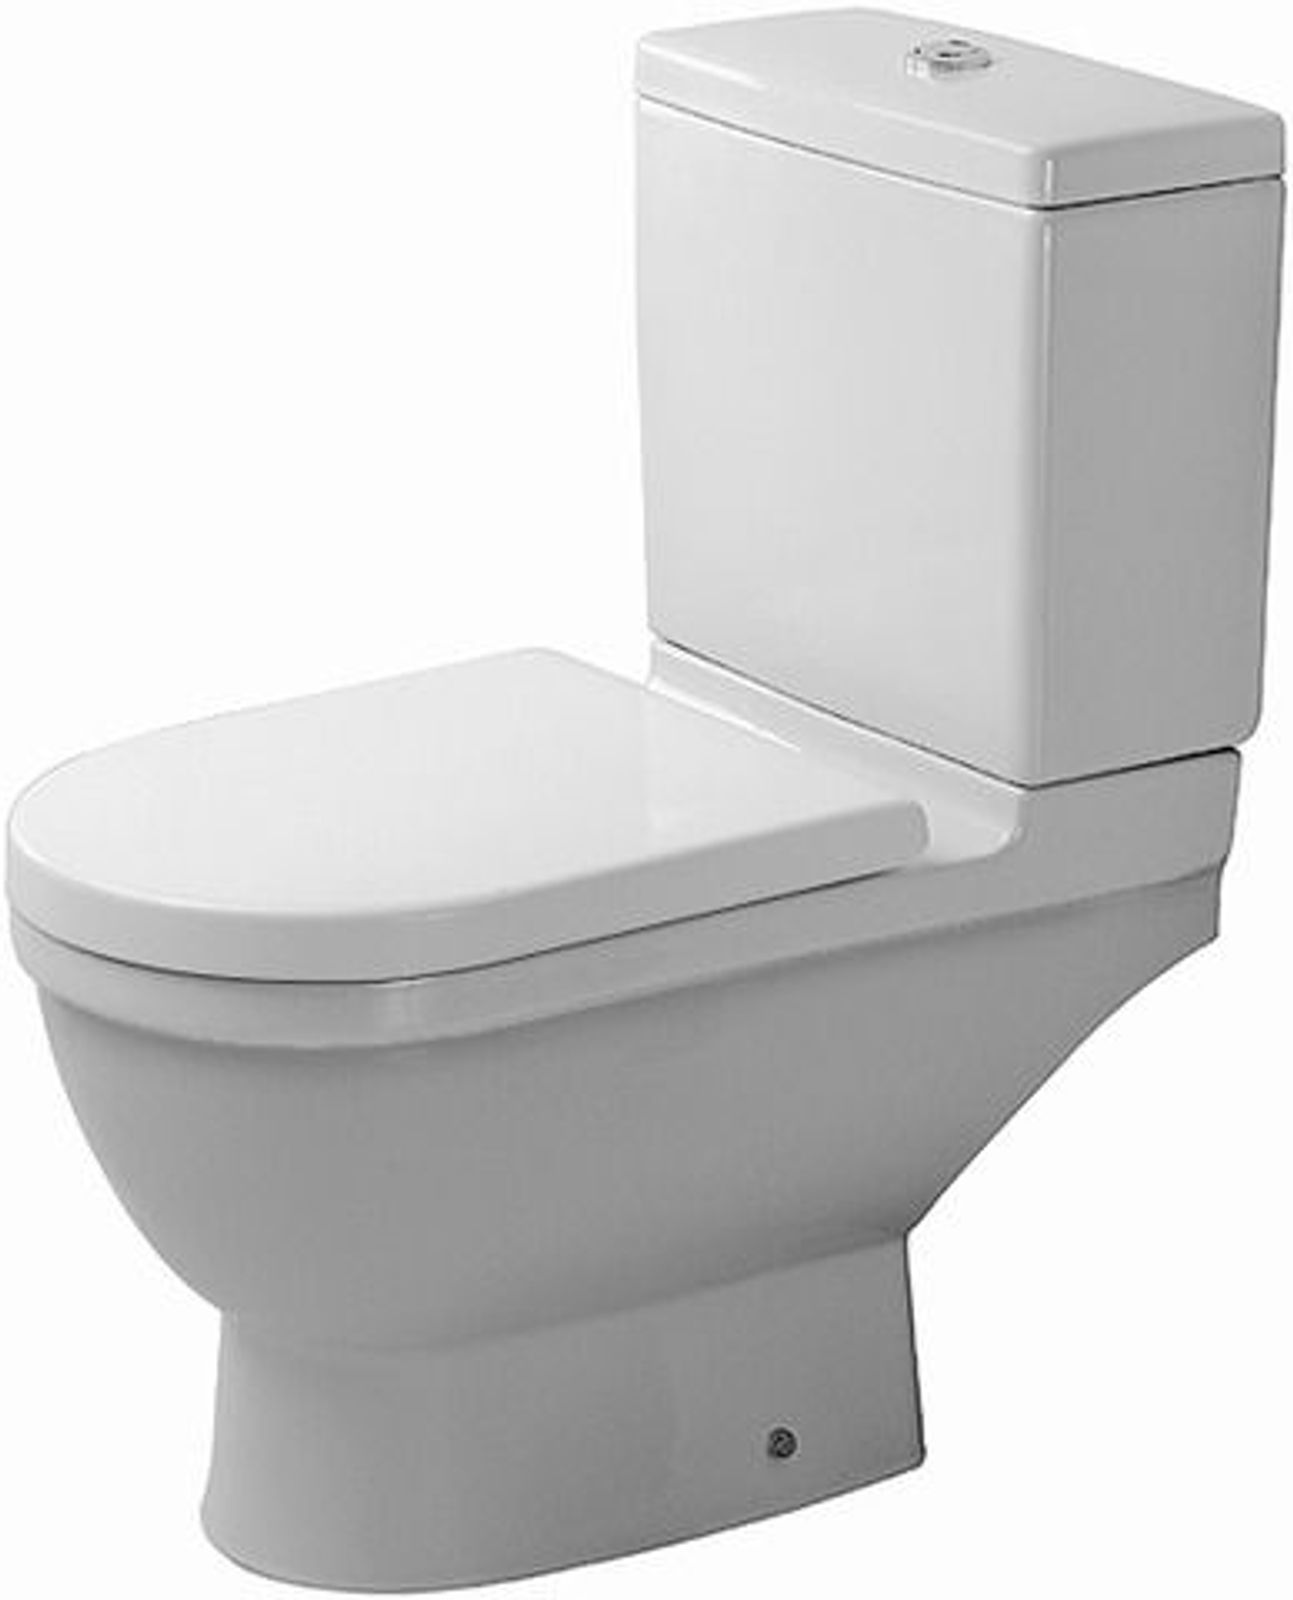 Stand-WC Kombi Starck 3 655 mm Tiefspüler, f.SPK, Abg.waagr., weiß